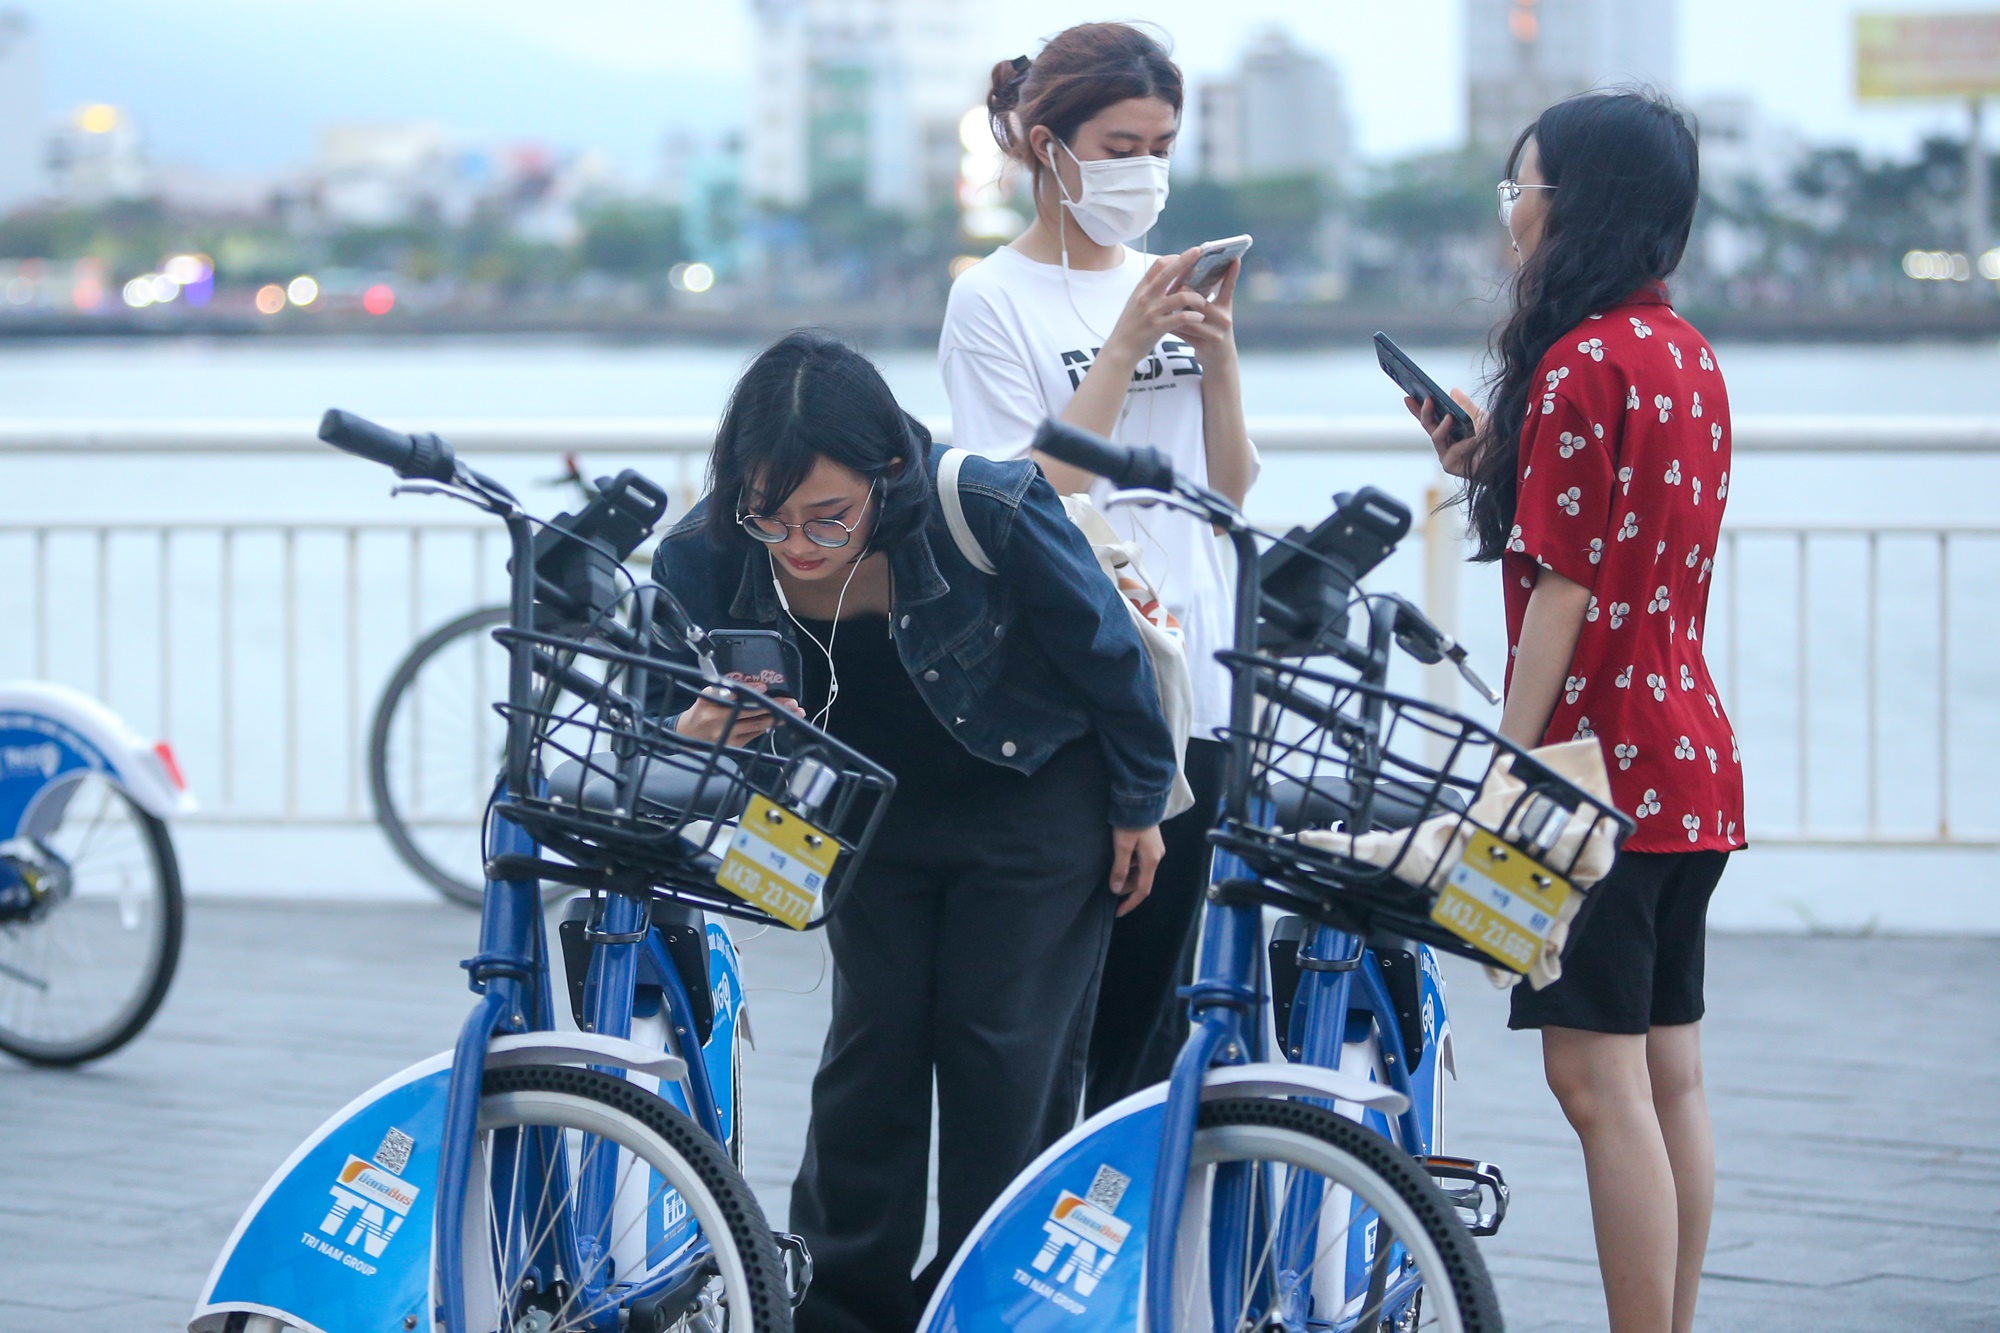 Du khách và giới trẻ thích thú với xe đạp công cộng giá chỉ 5k lần đầu xuất hiện ở Đà Nẵng - Ảnh 7.